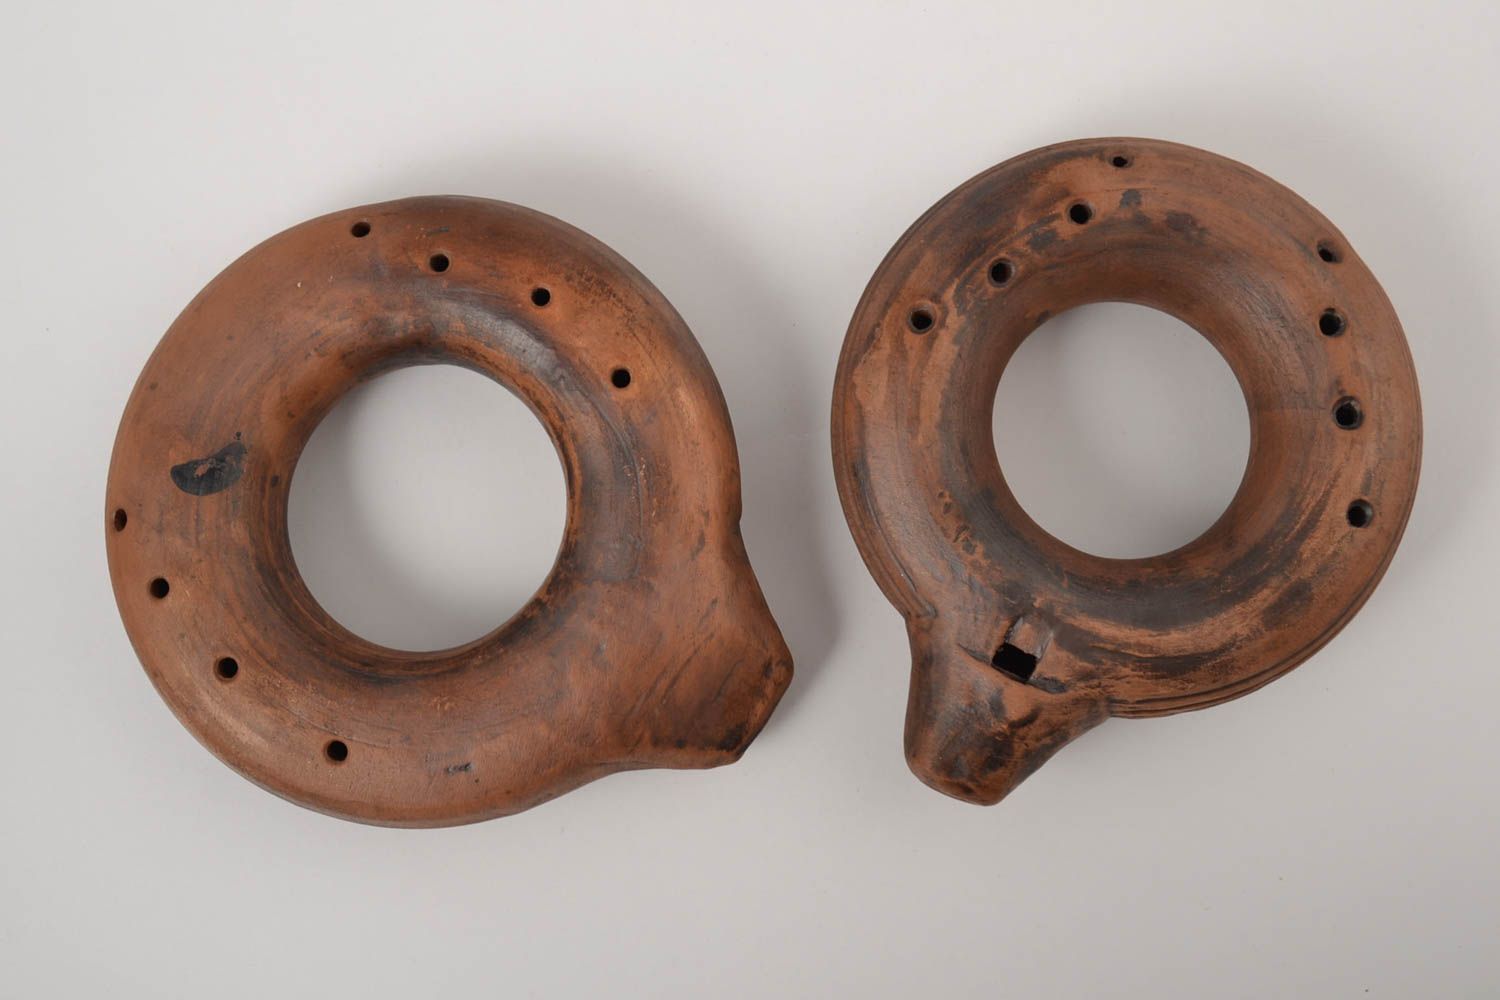 Ocarina instrumentos musicales artesanales silbatos de barro regalo original foto 2